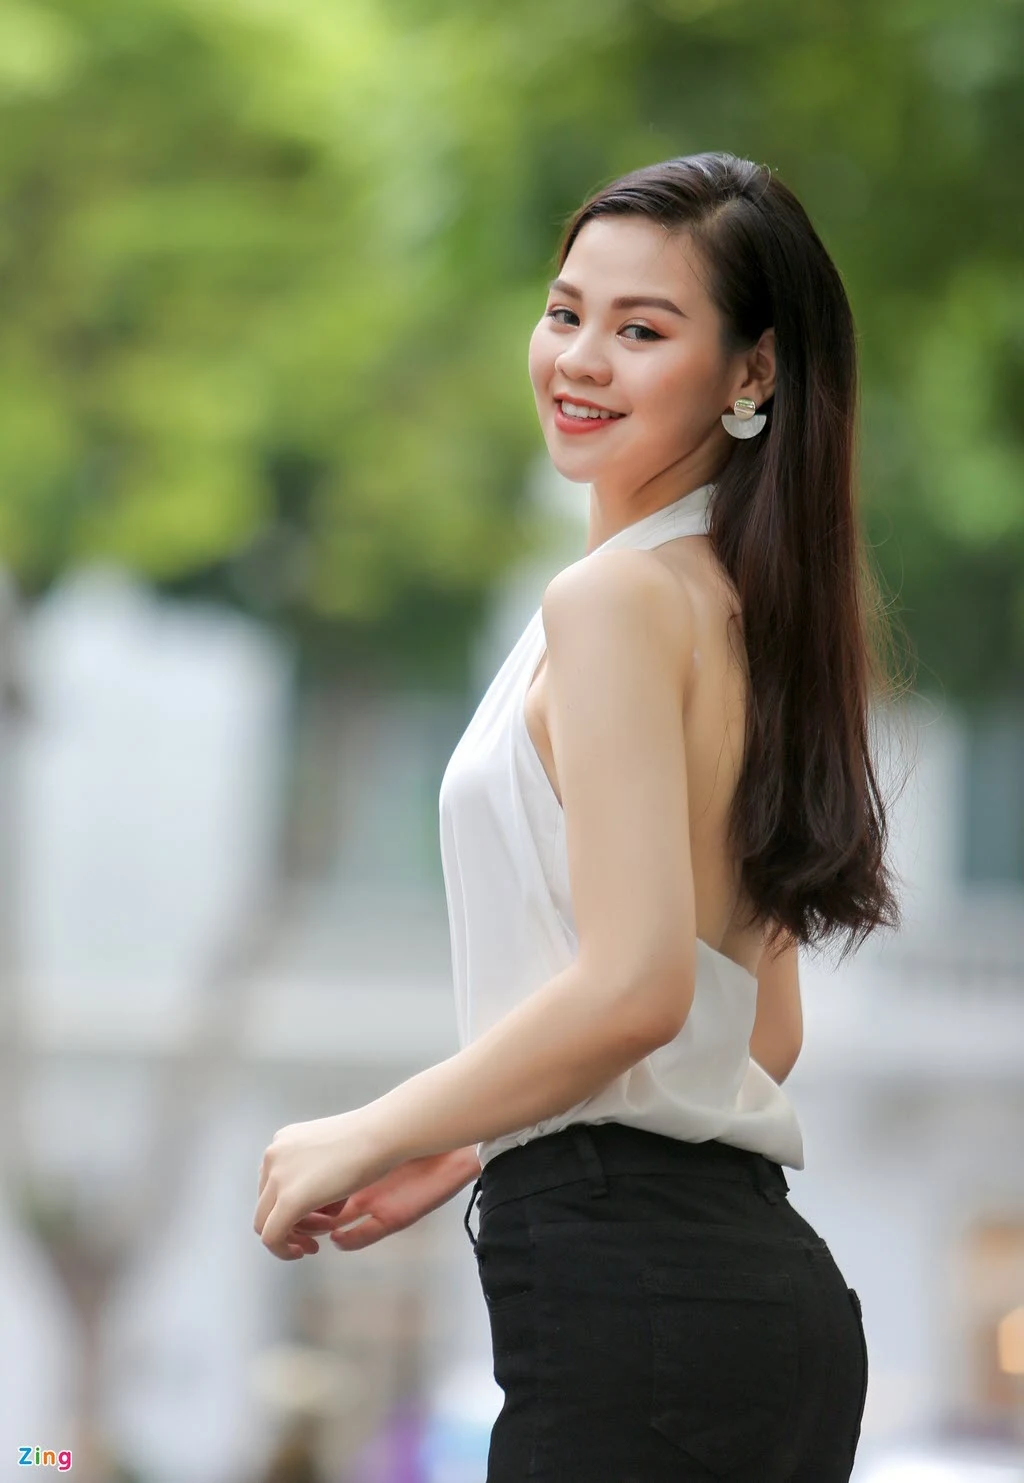 Nữ sinh 10X giảm 17 kg để thi Hoa hậu Việt Nam